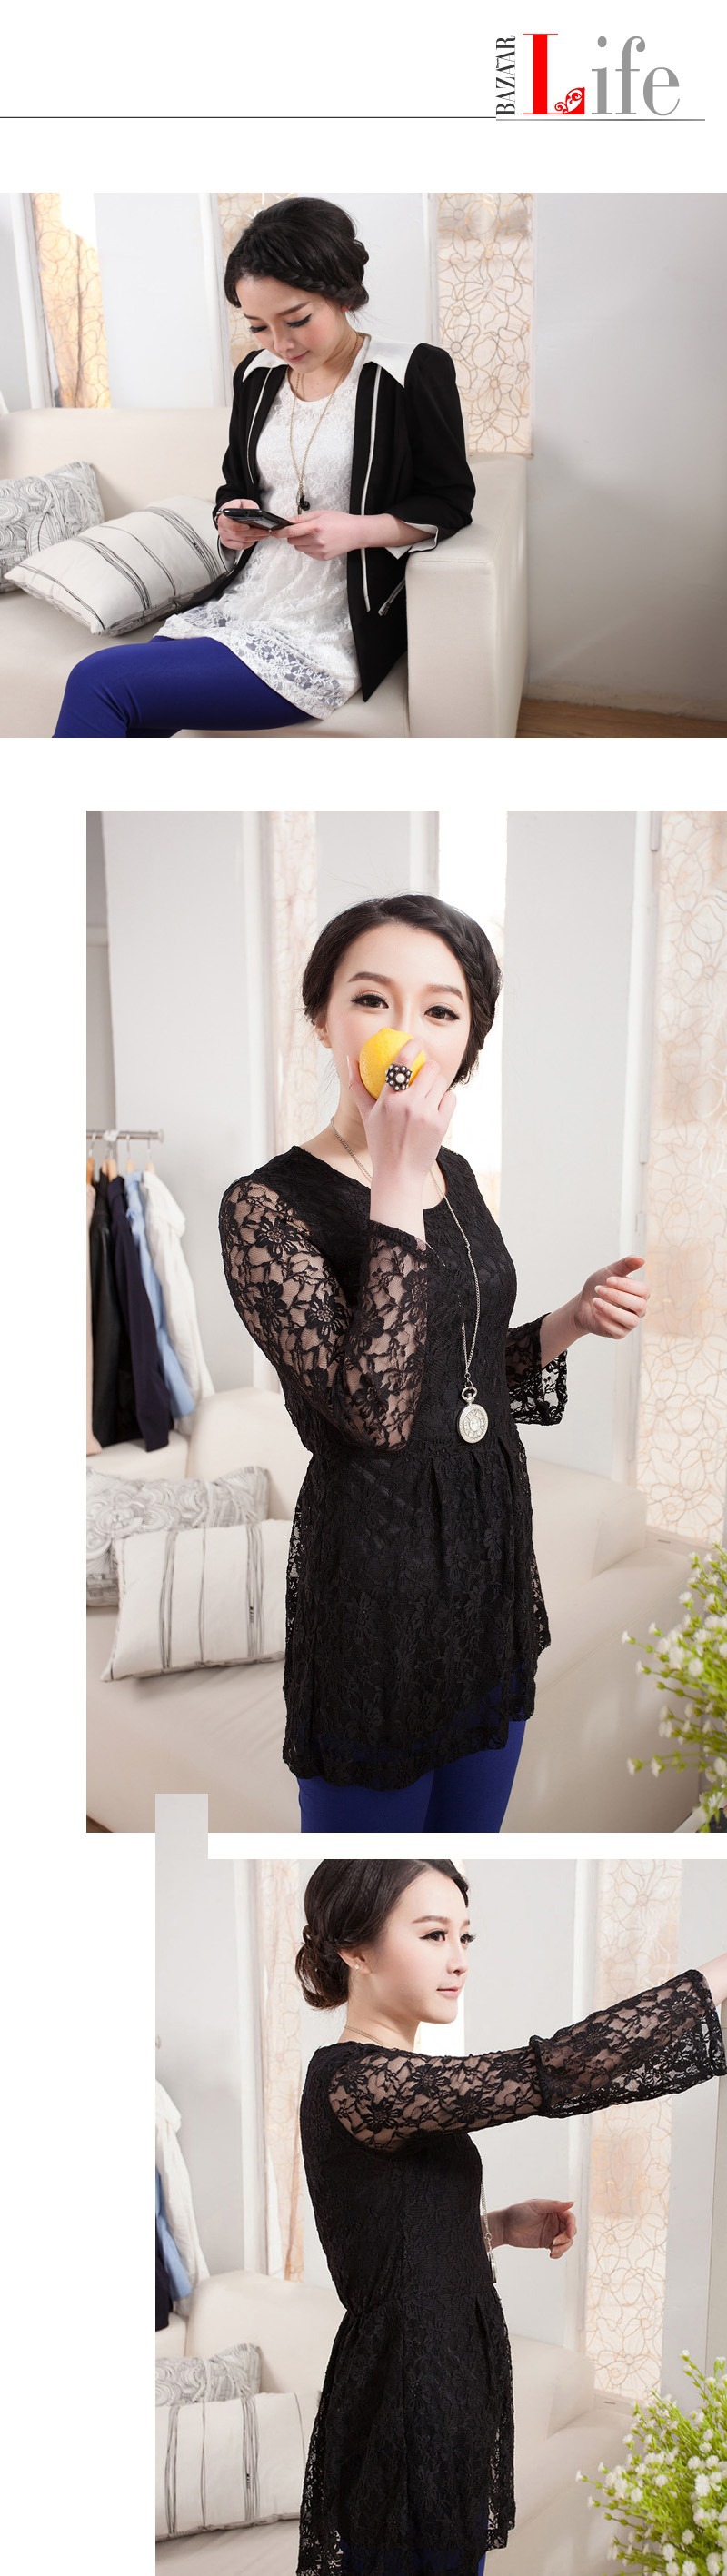 mssefn 2014新款 韩版修身喇叭袖蕾丝衫 打底裙 8612-8611